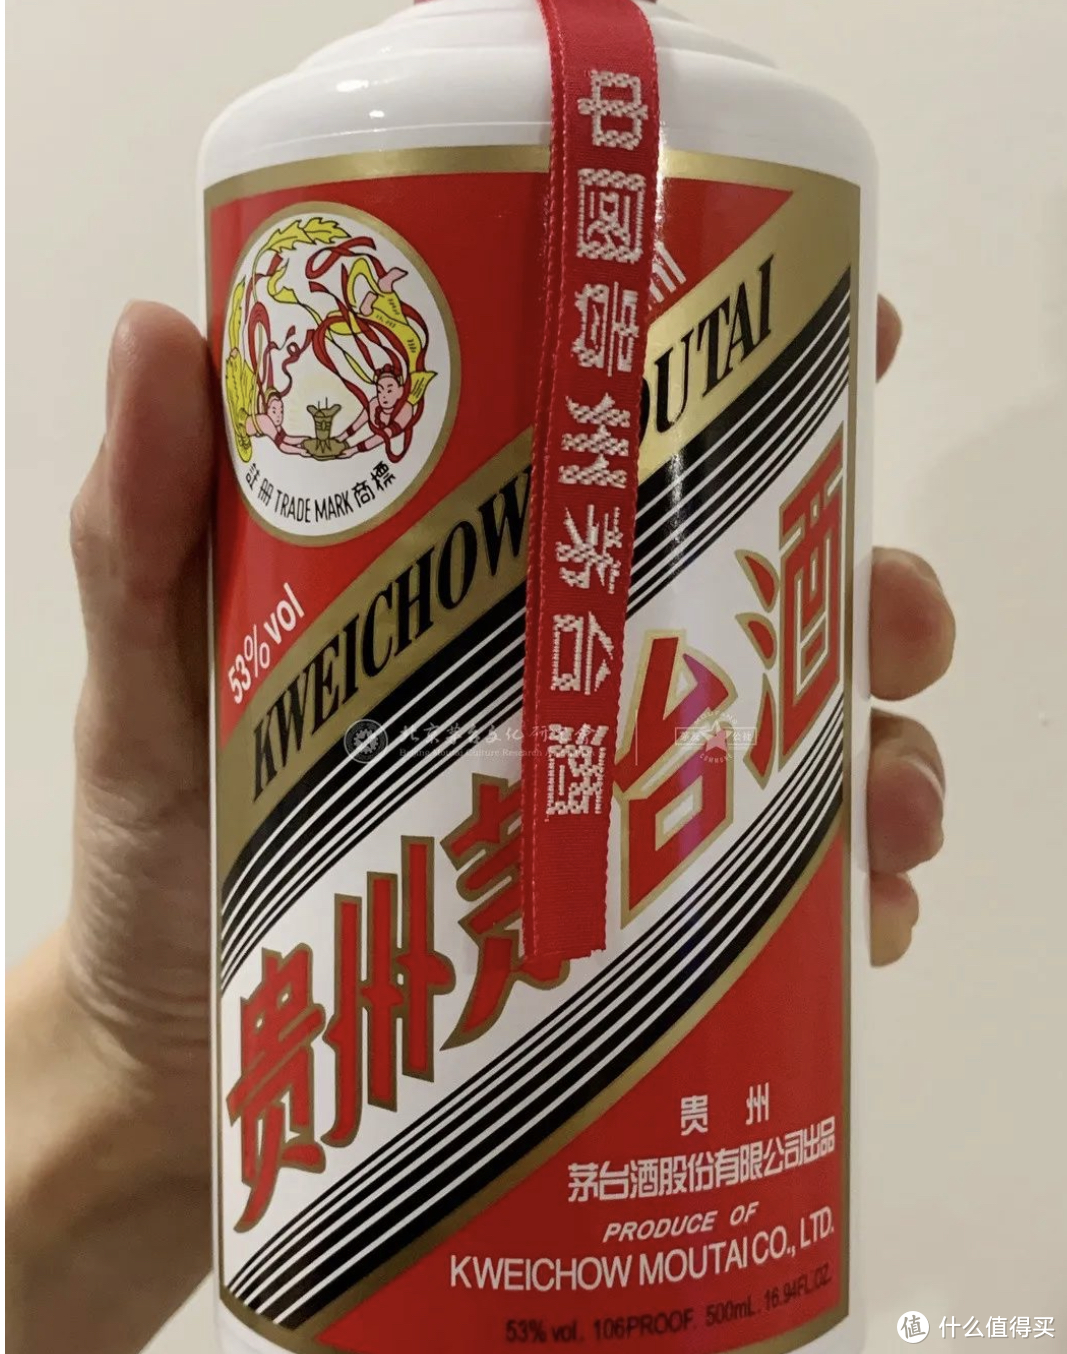 中国貴州茅台酒・希少飛天商標・43% 500ml - quintaointeriores.com.br